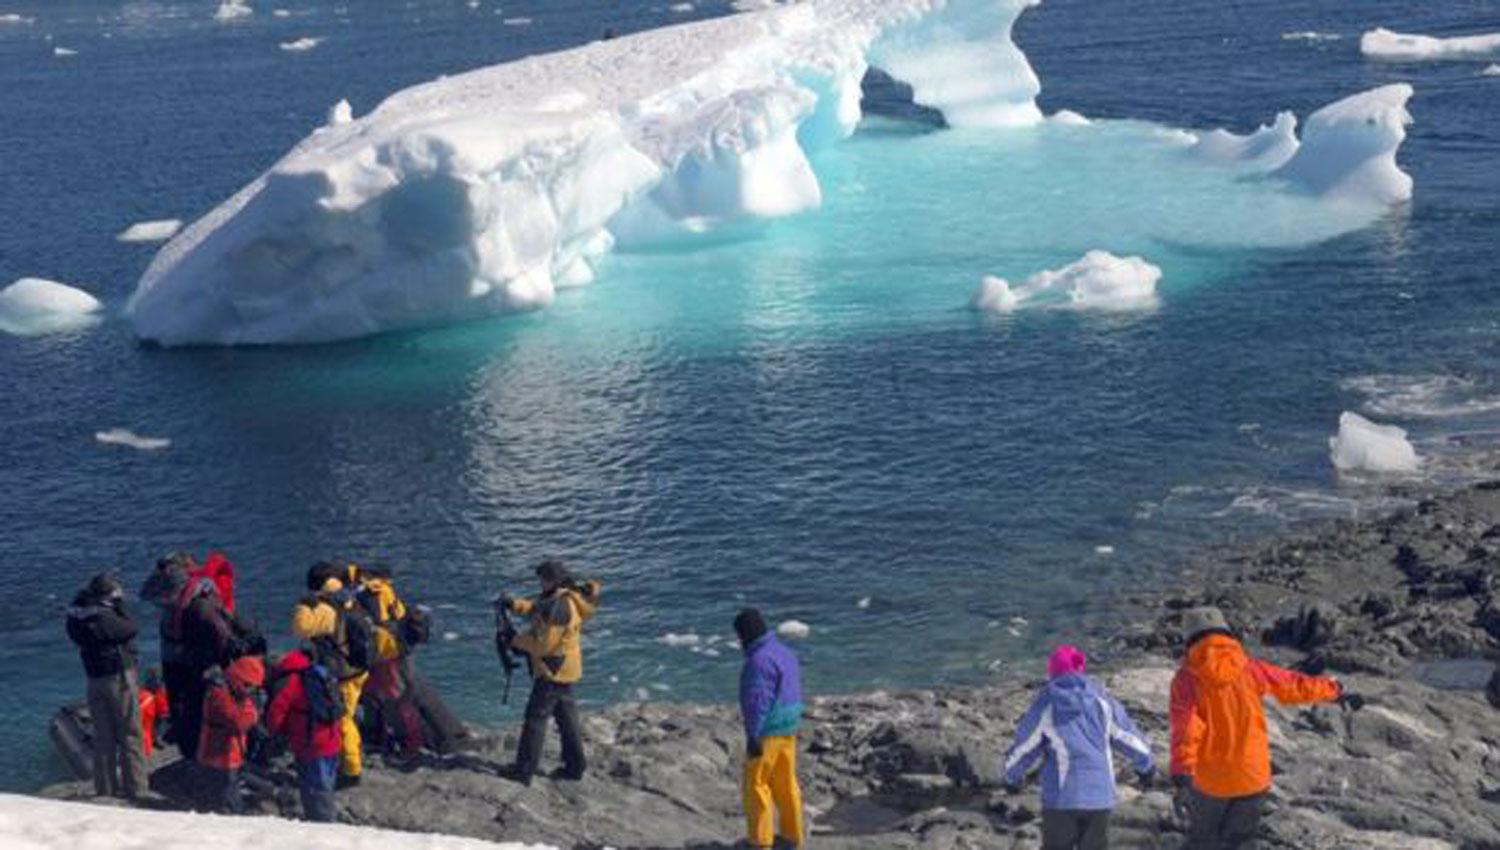 NUEVAS RUTAS. Los chinos y los estadounidenses son los principales interesados en hacer turismo en la Antártida. FOTO TOMADA DE BBC.COM